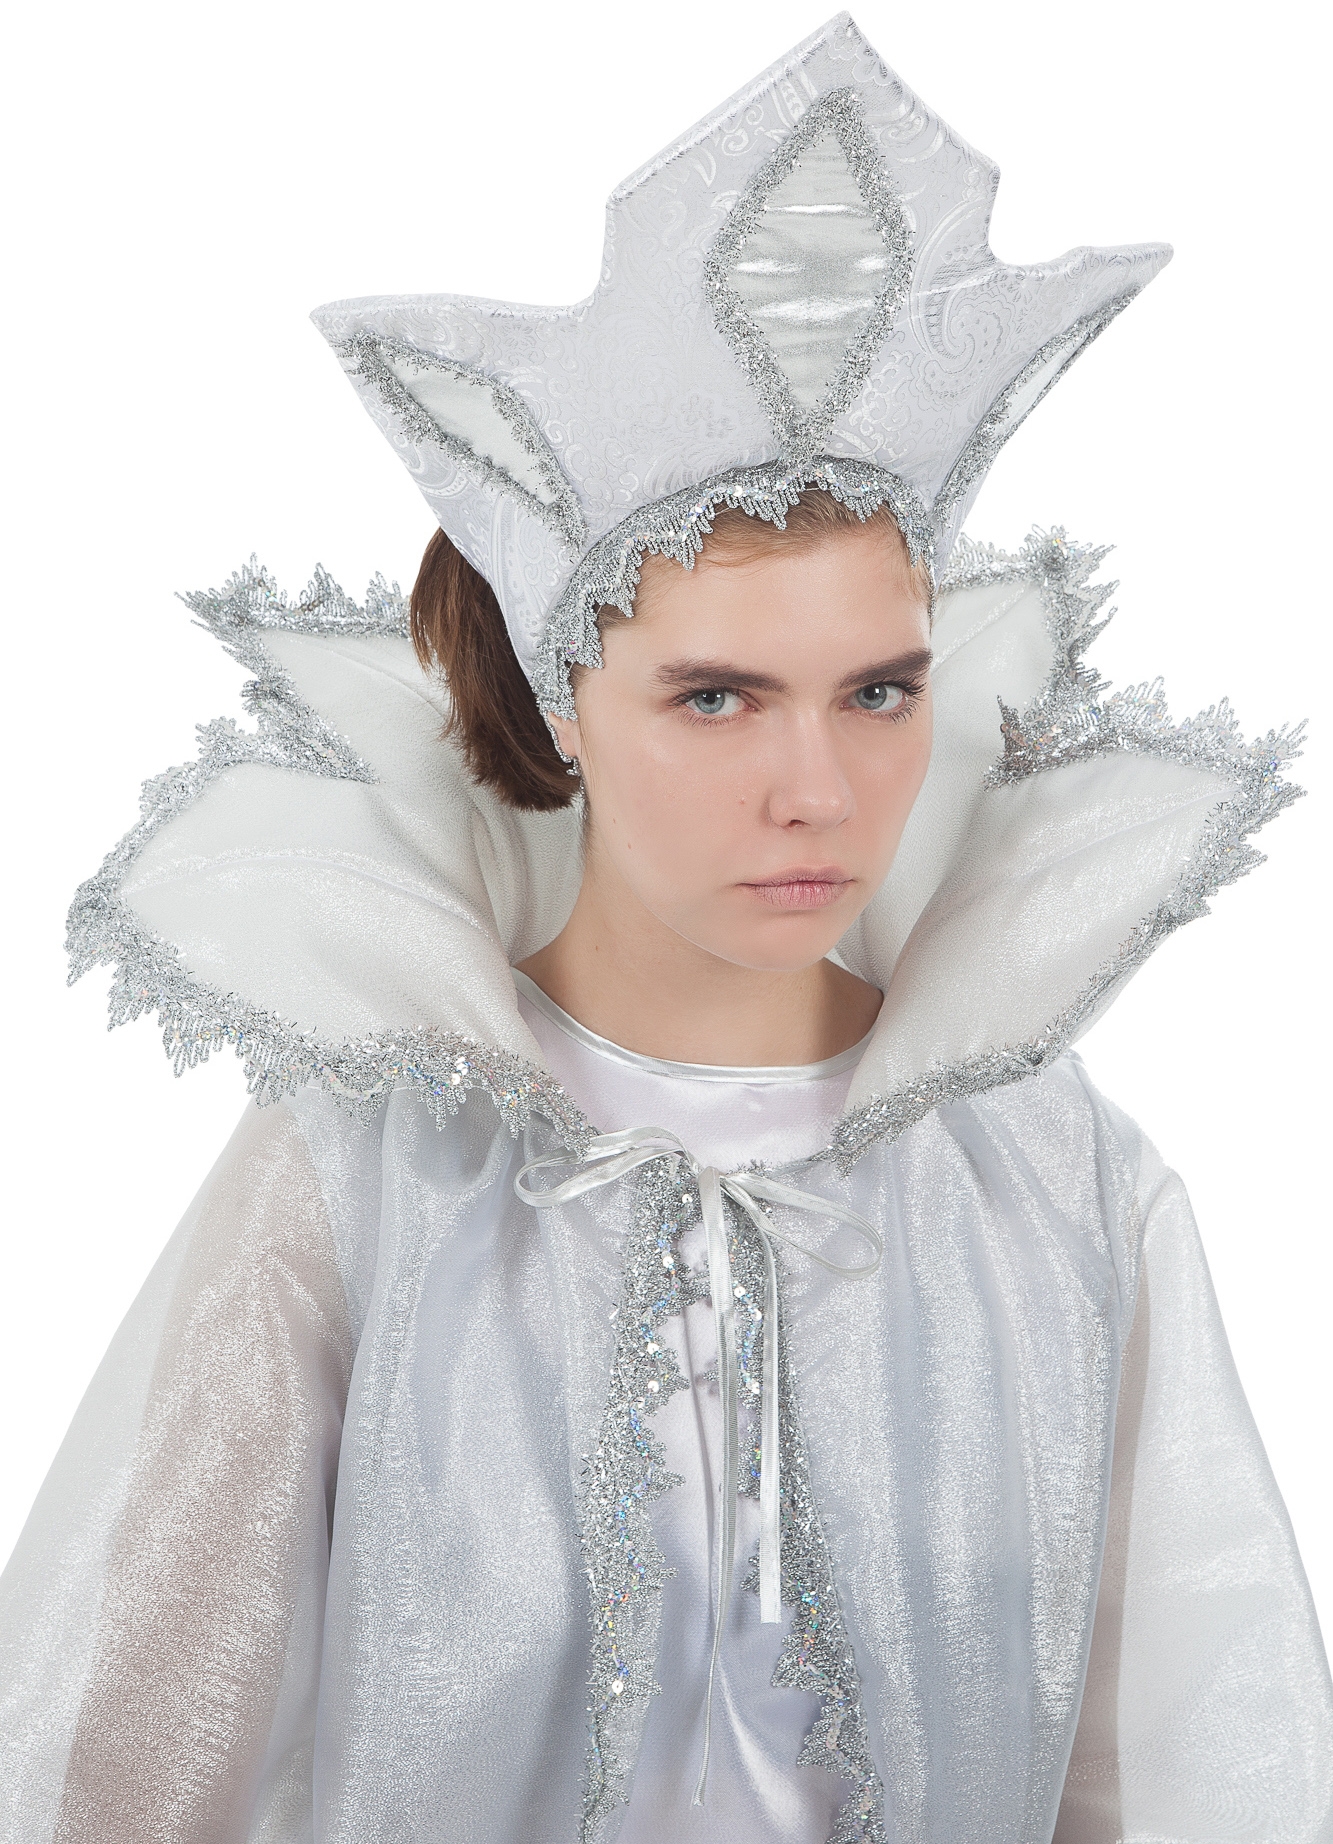 Новогодний костюм снежной королевы: волшебство и элегантность!